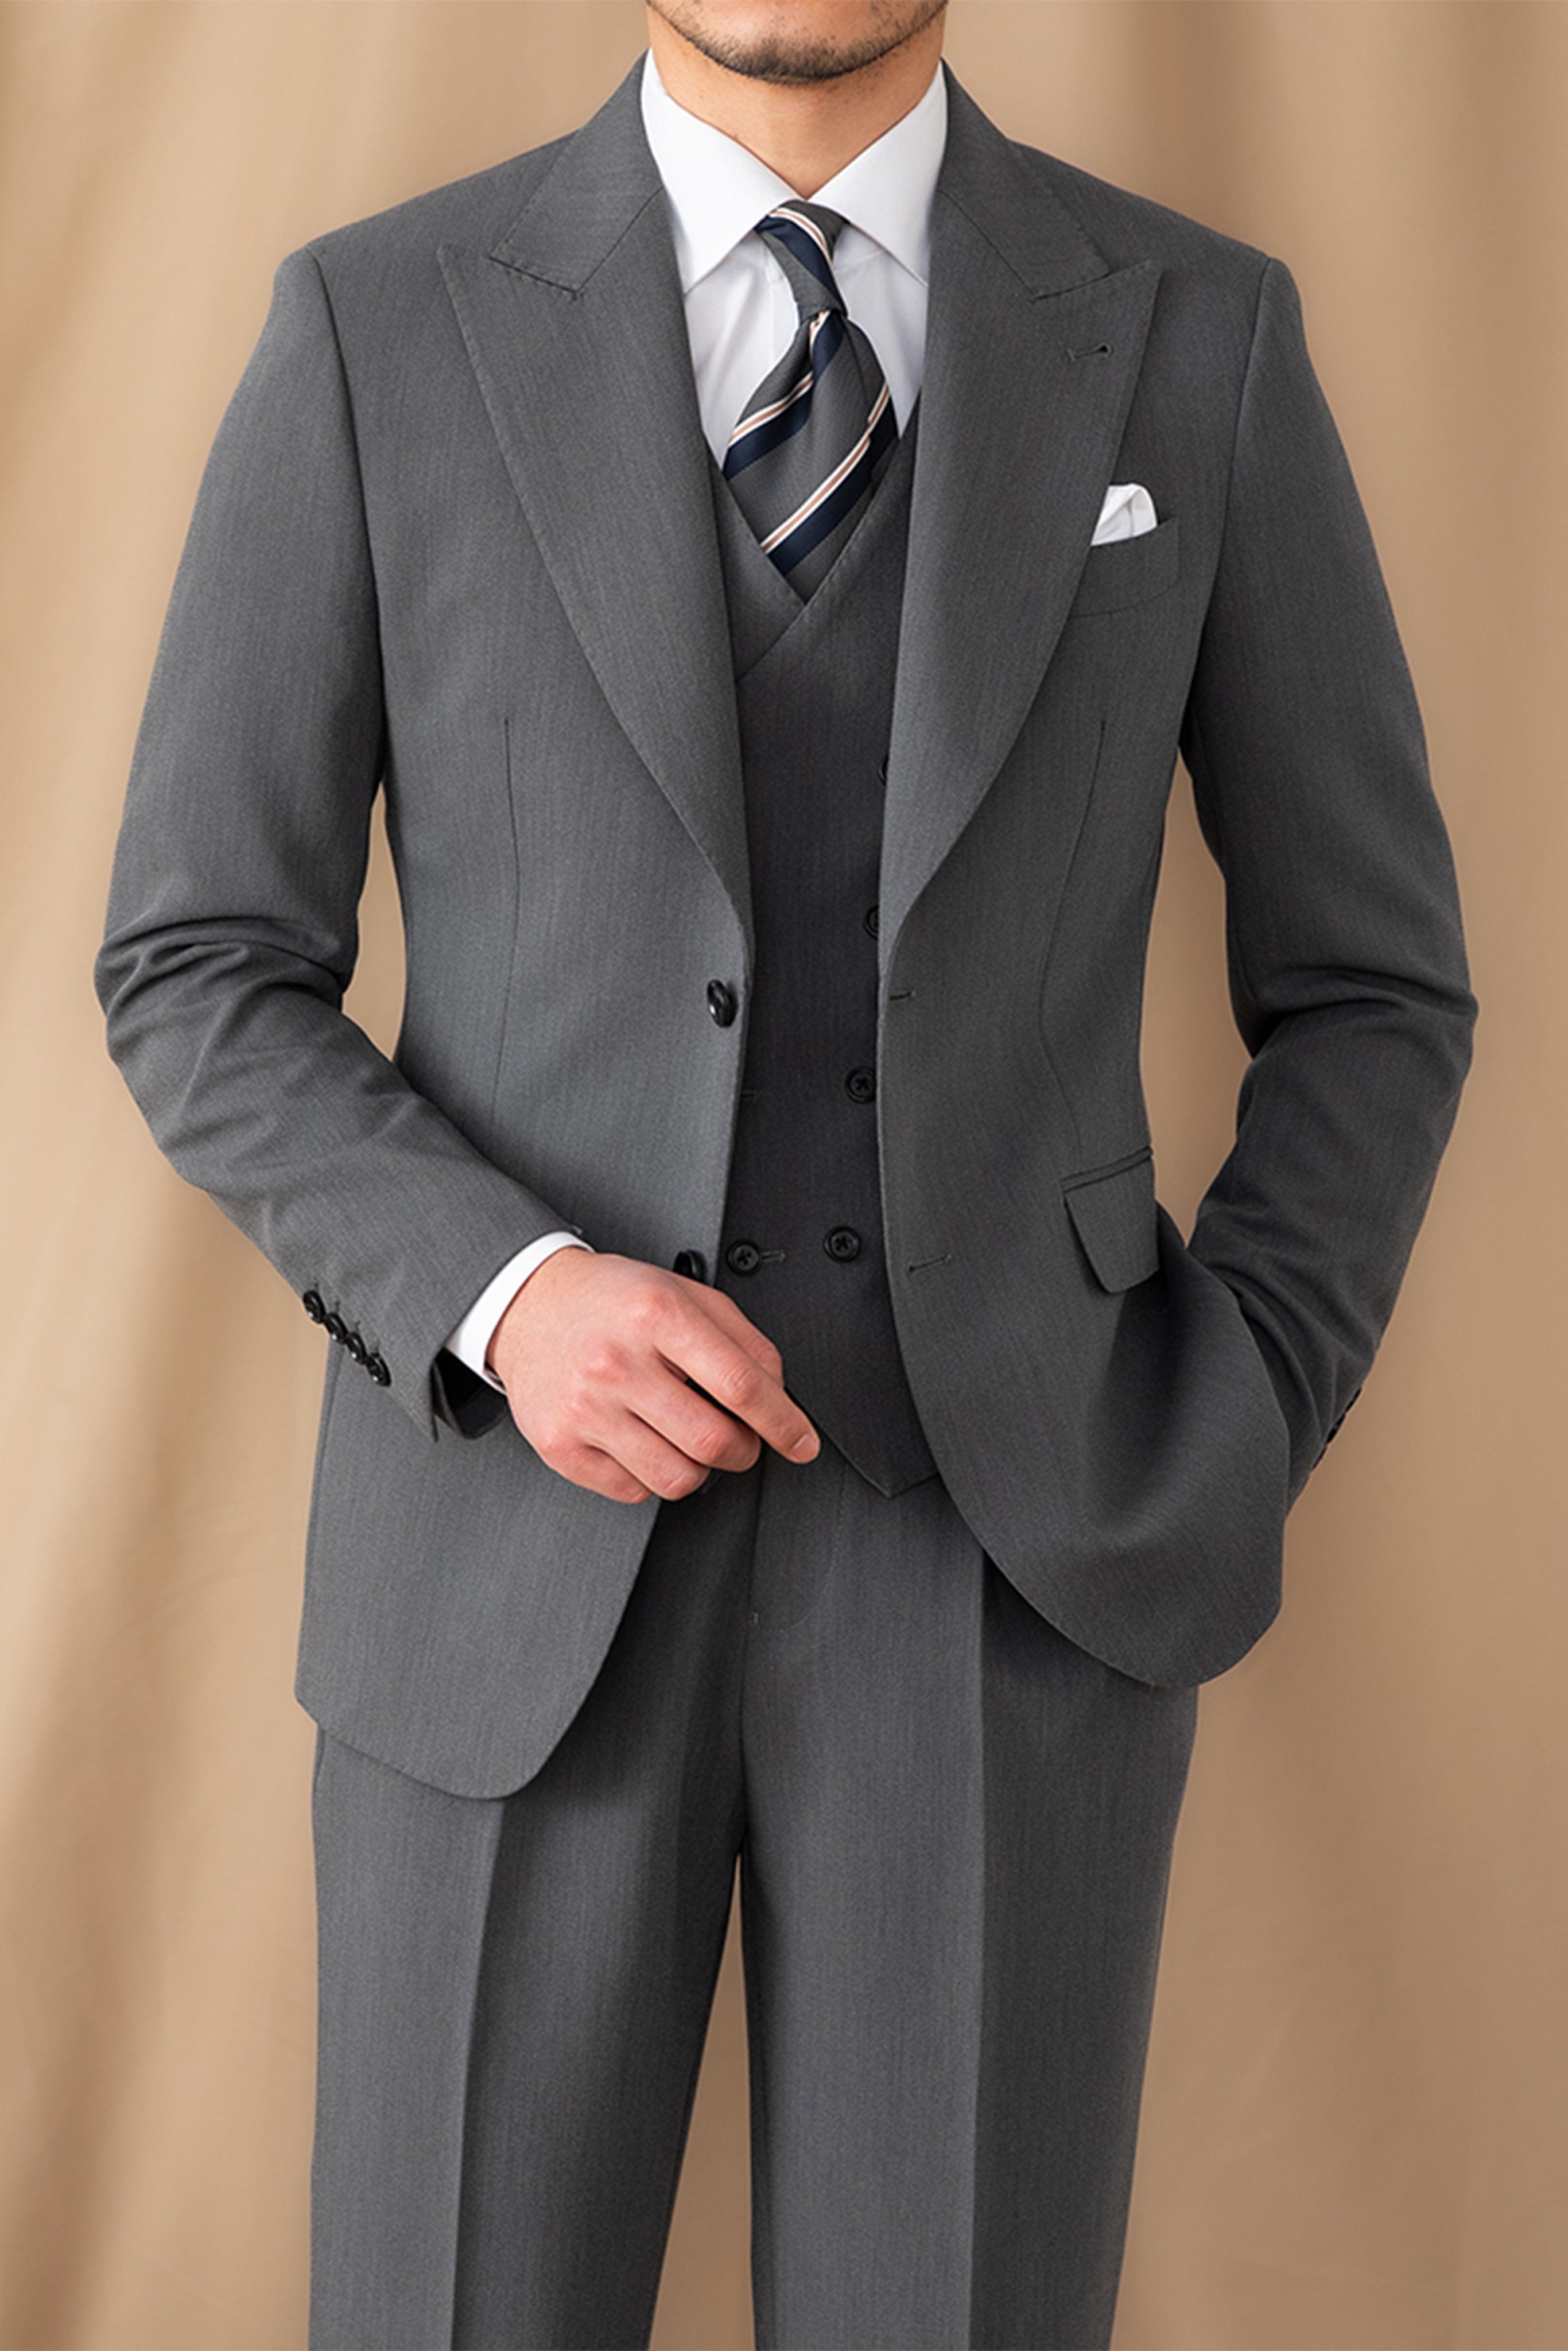 aesido Men's Suit 3 Piece Grey Business Casual Peak Lapel Jacket (Blazer+Vest+Pants)